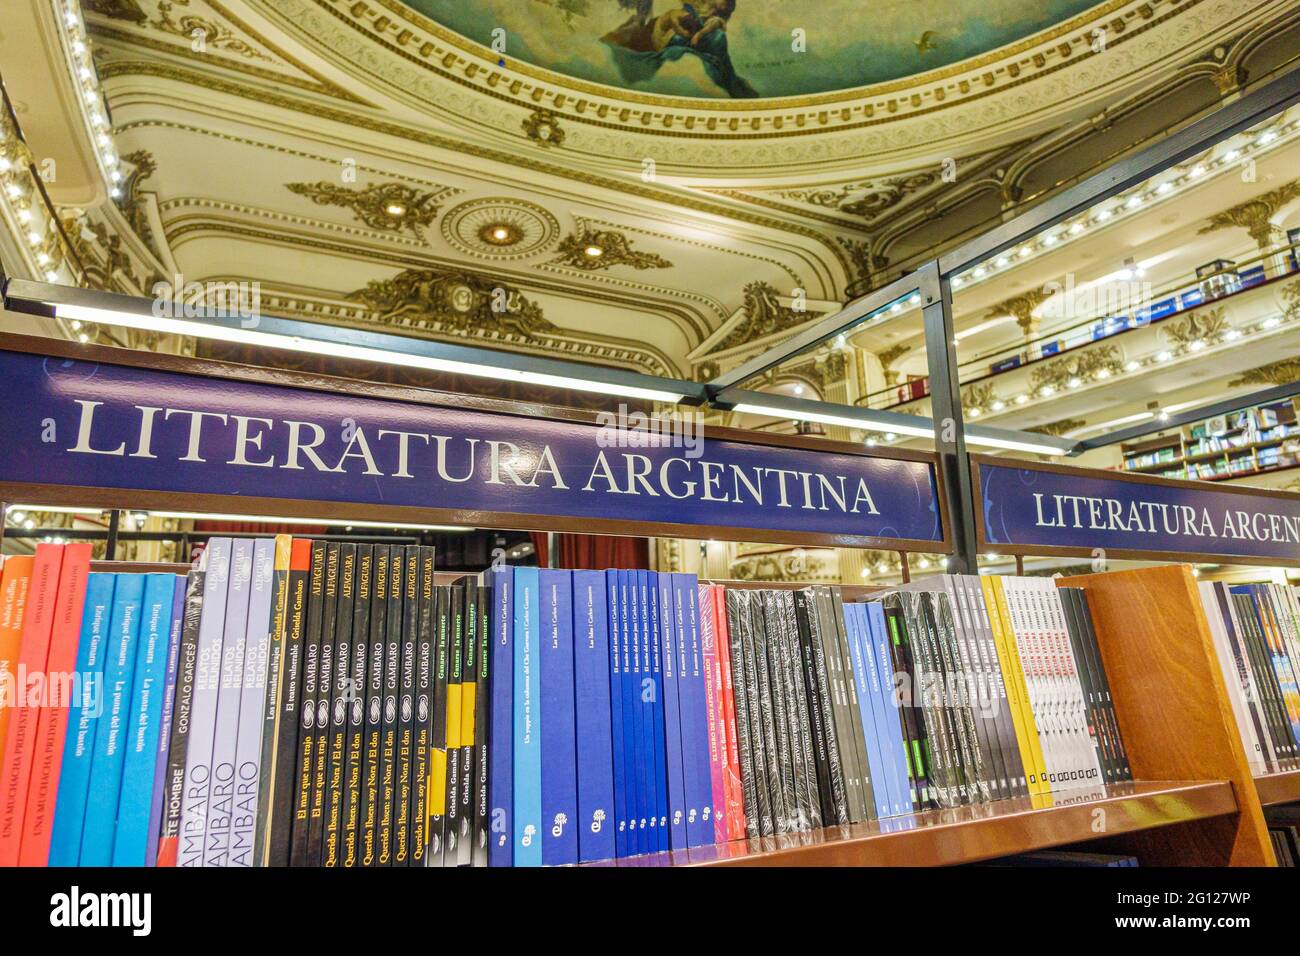 Argentina Buenos Aires Barrio Norte El Ateneo Gran librería espléndida tienda de libros antigua teatro tienda de literatura dentro del interior Foto de stock